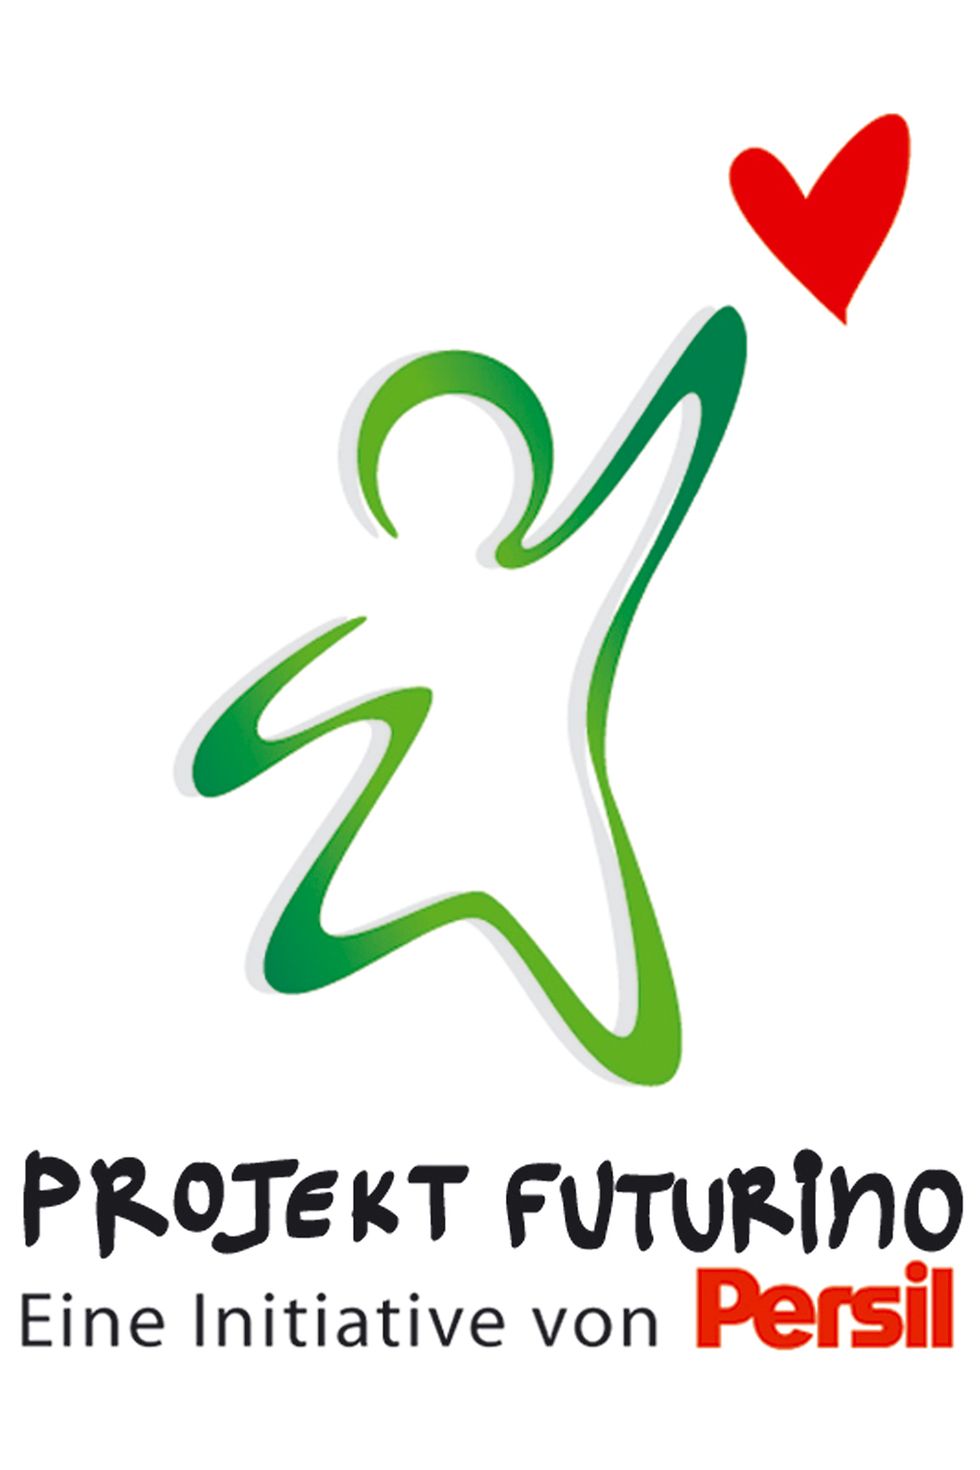 
Mehr als 140.000 Kinder wurden bereits durch „Projekt Futurino“ unterstützt.